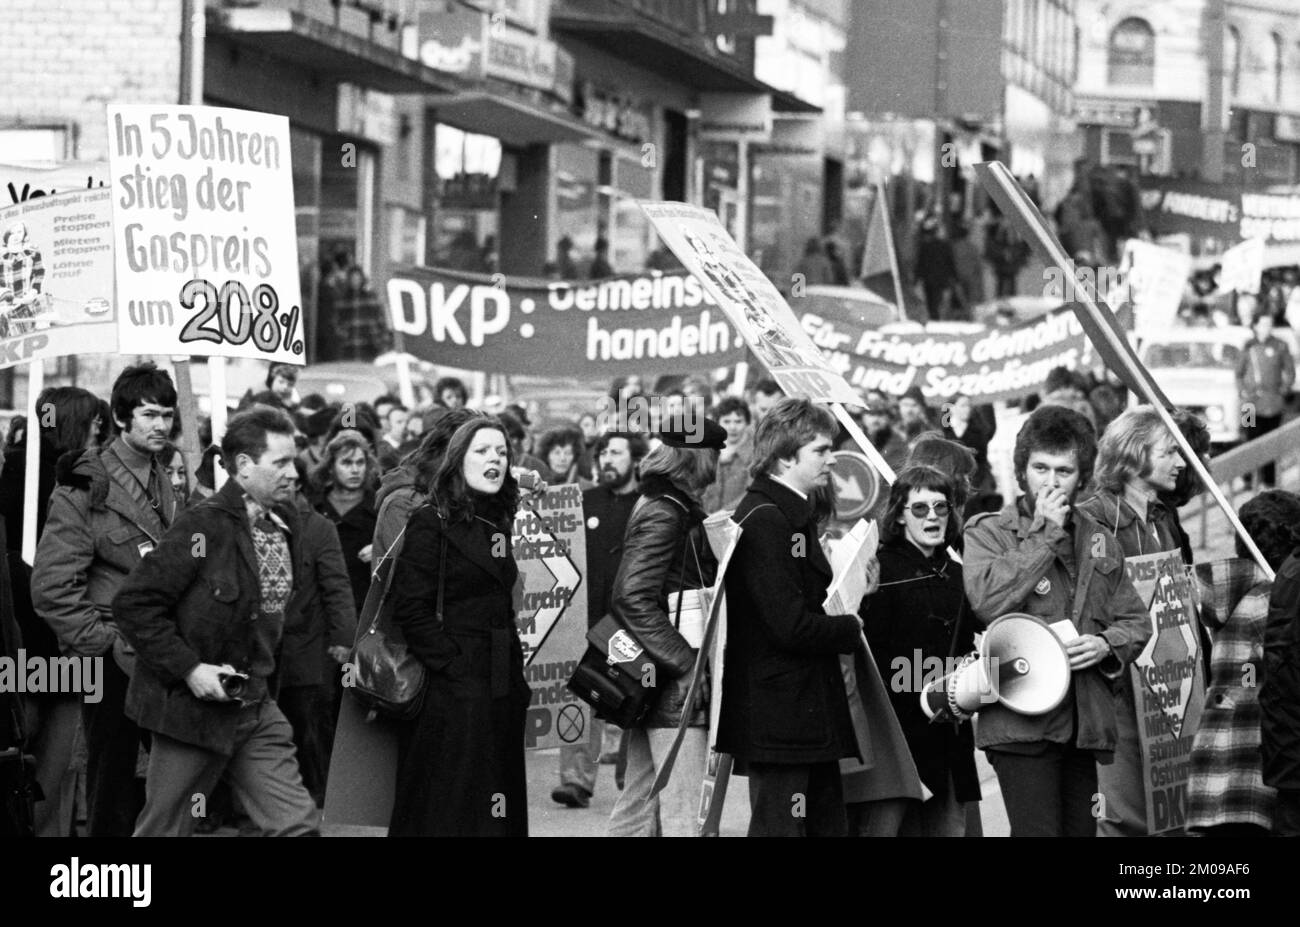 Les partisans et les fonctionnaires de la DGP ont manifesté pour un gel des prix communautaires et généraux sur 18.01.1975 à Solingen, Allemagne, Europe Banque D'Images